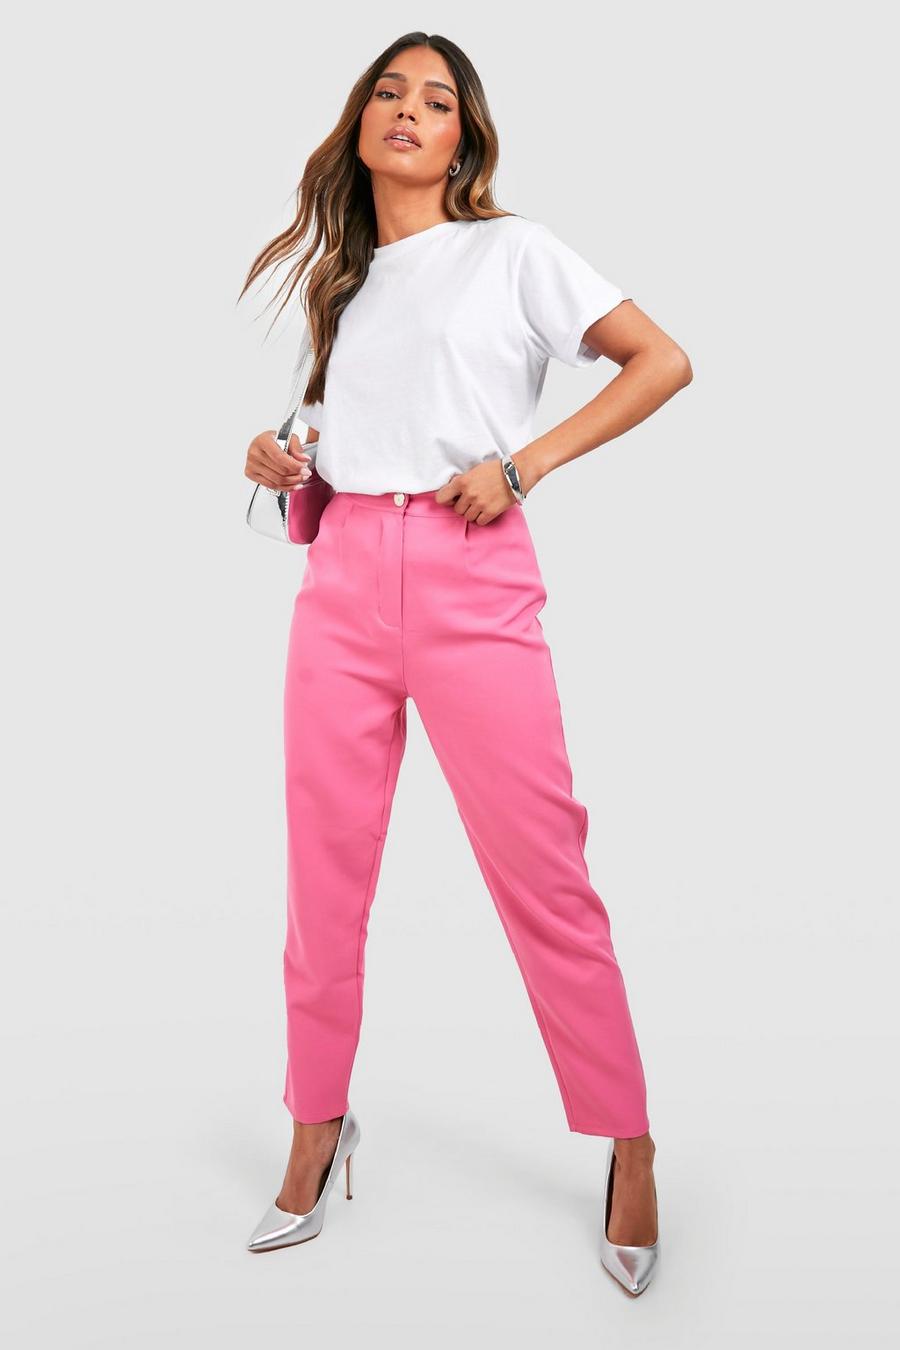 Pantalón entallado de tiro alto ajustado, Candy pink rosa